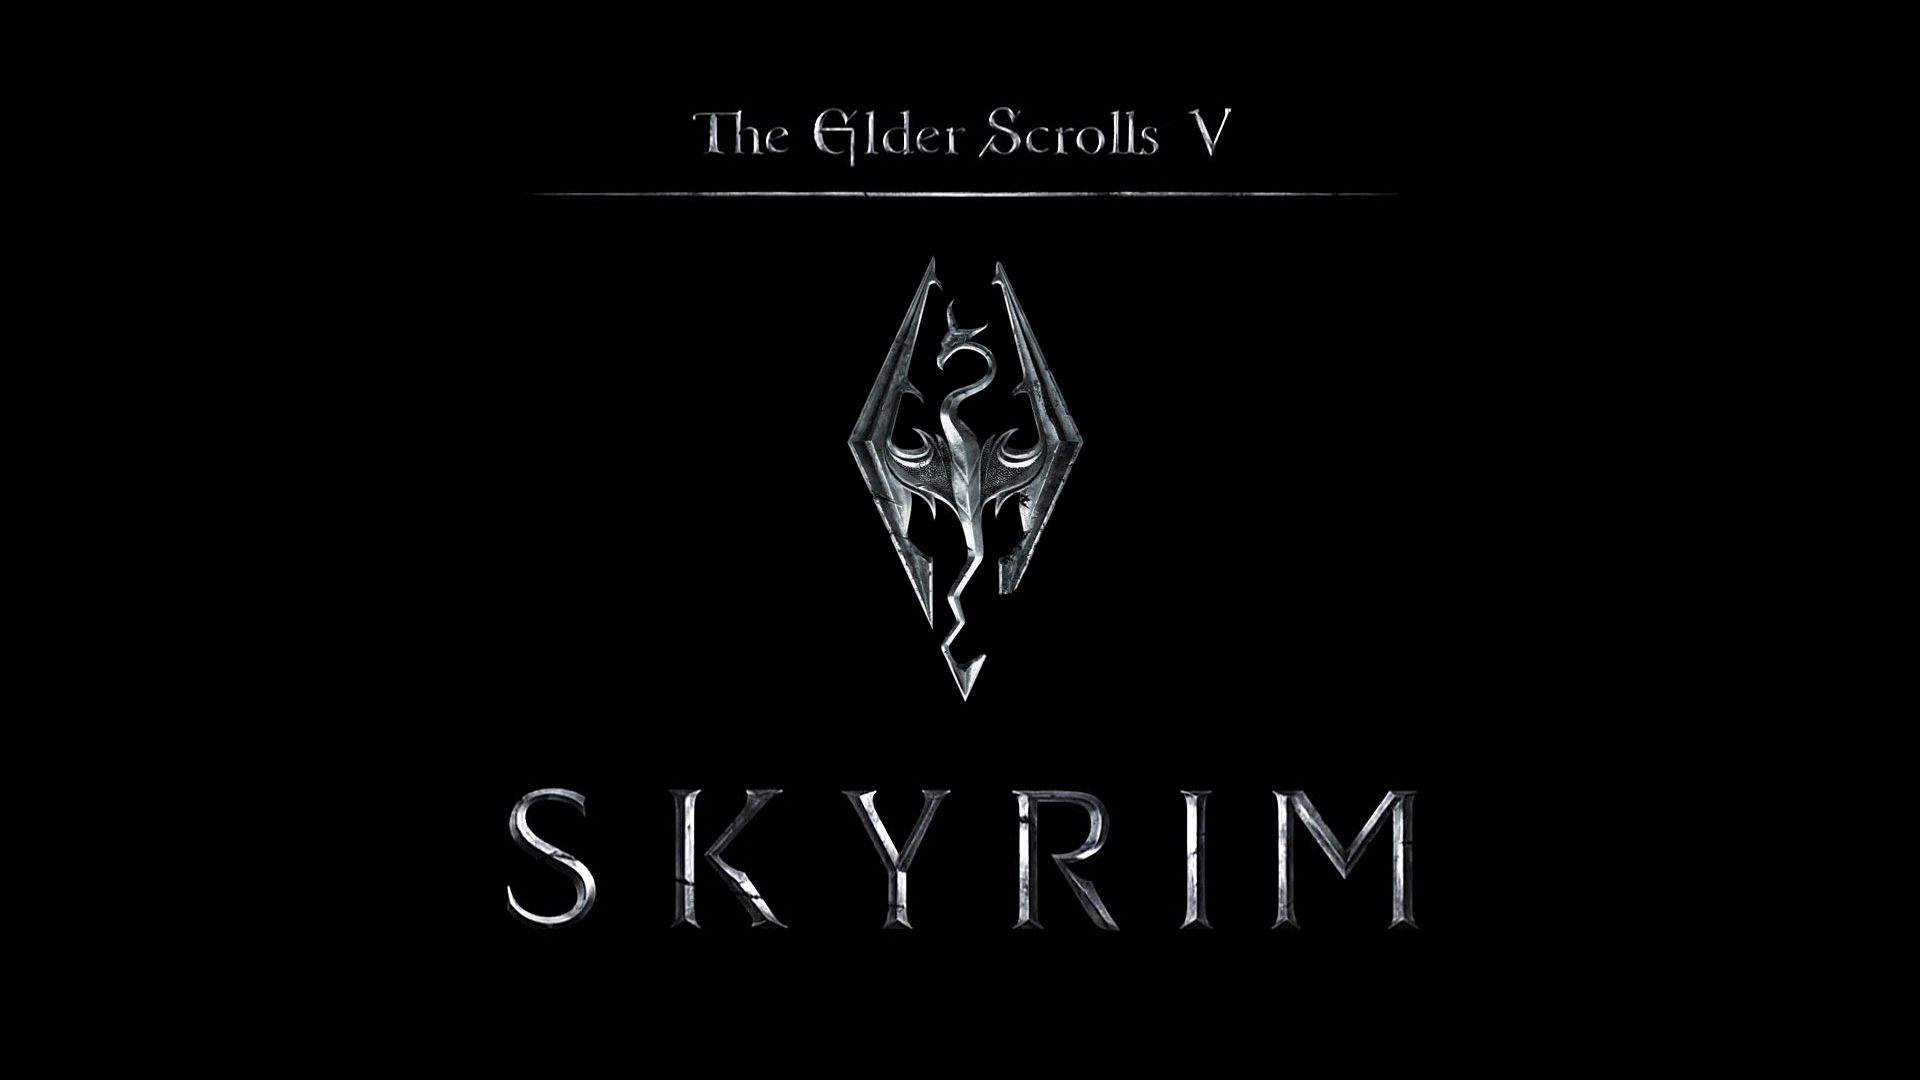 The Elder Scrolls V Skyrim HD Wallpaper For Desktop